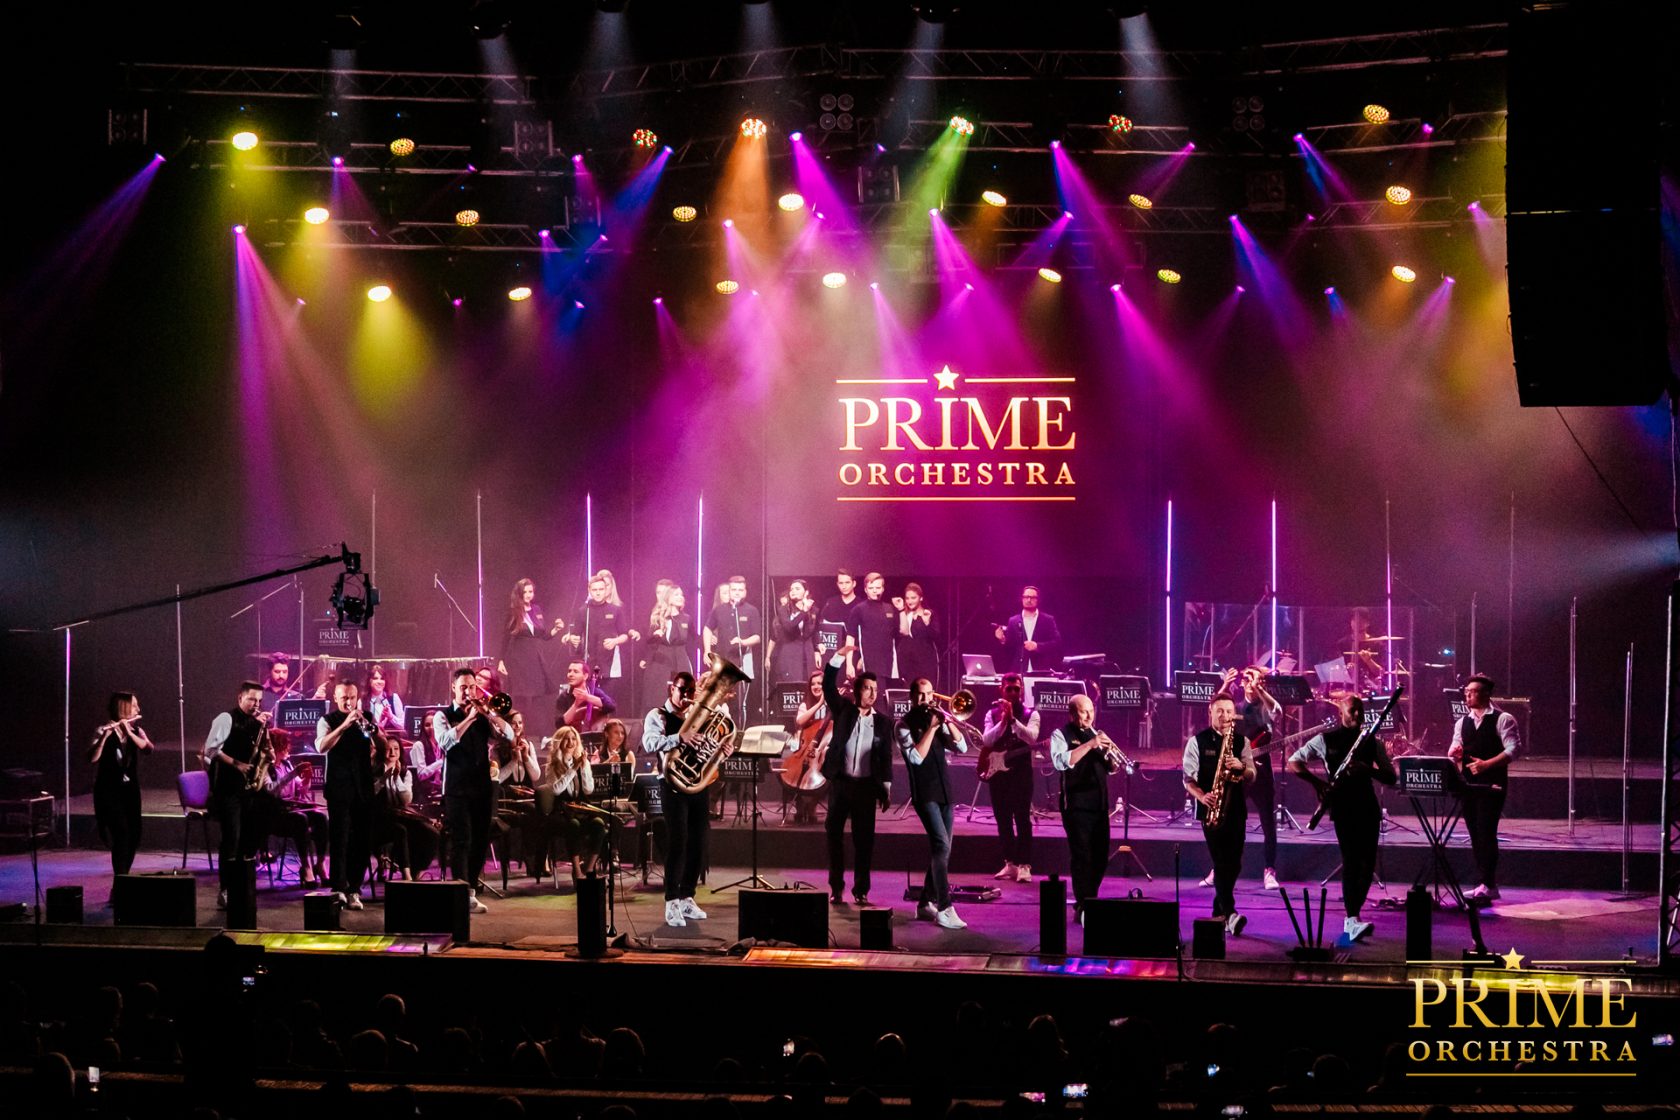 Prime orchestra